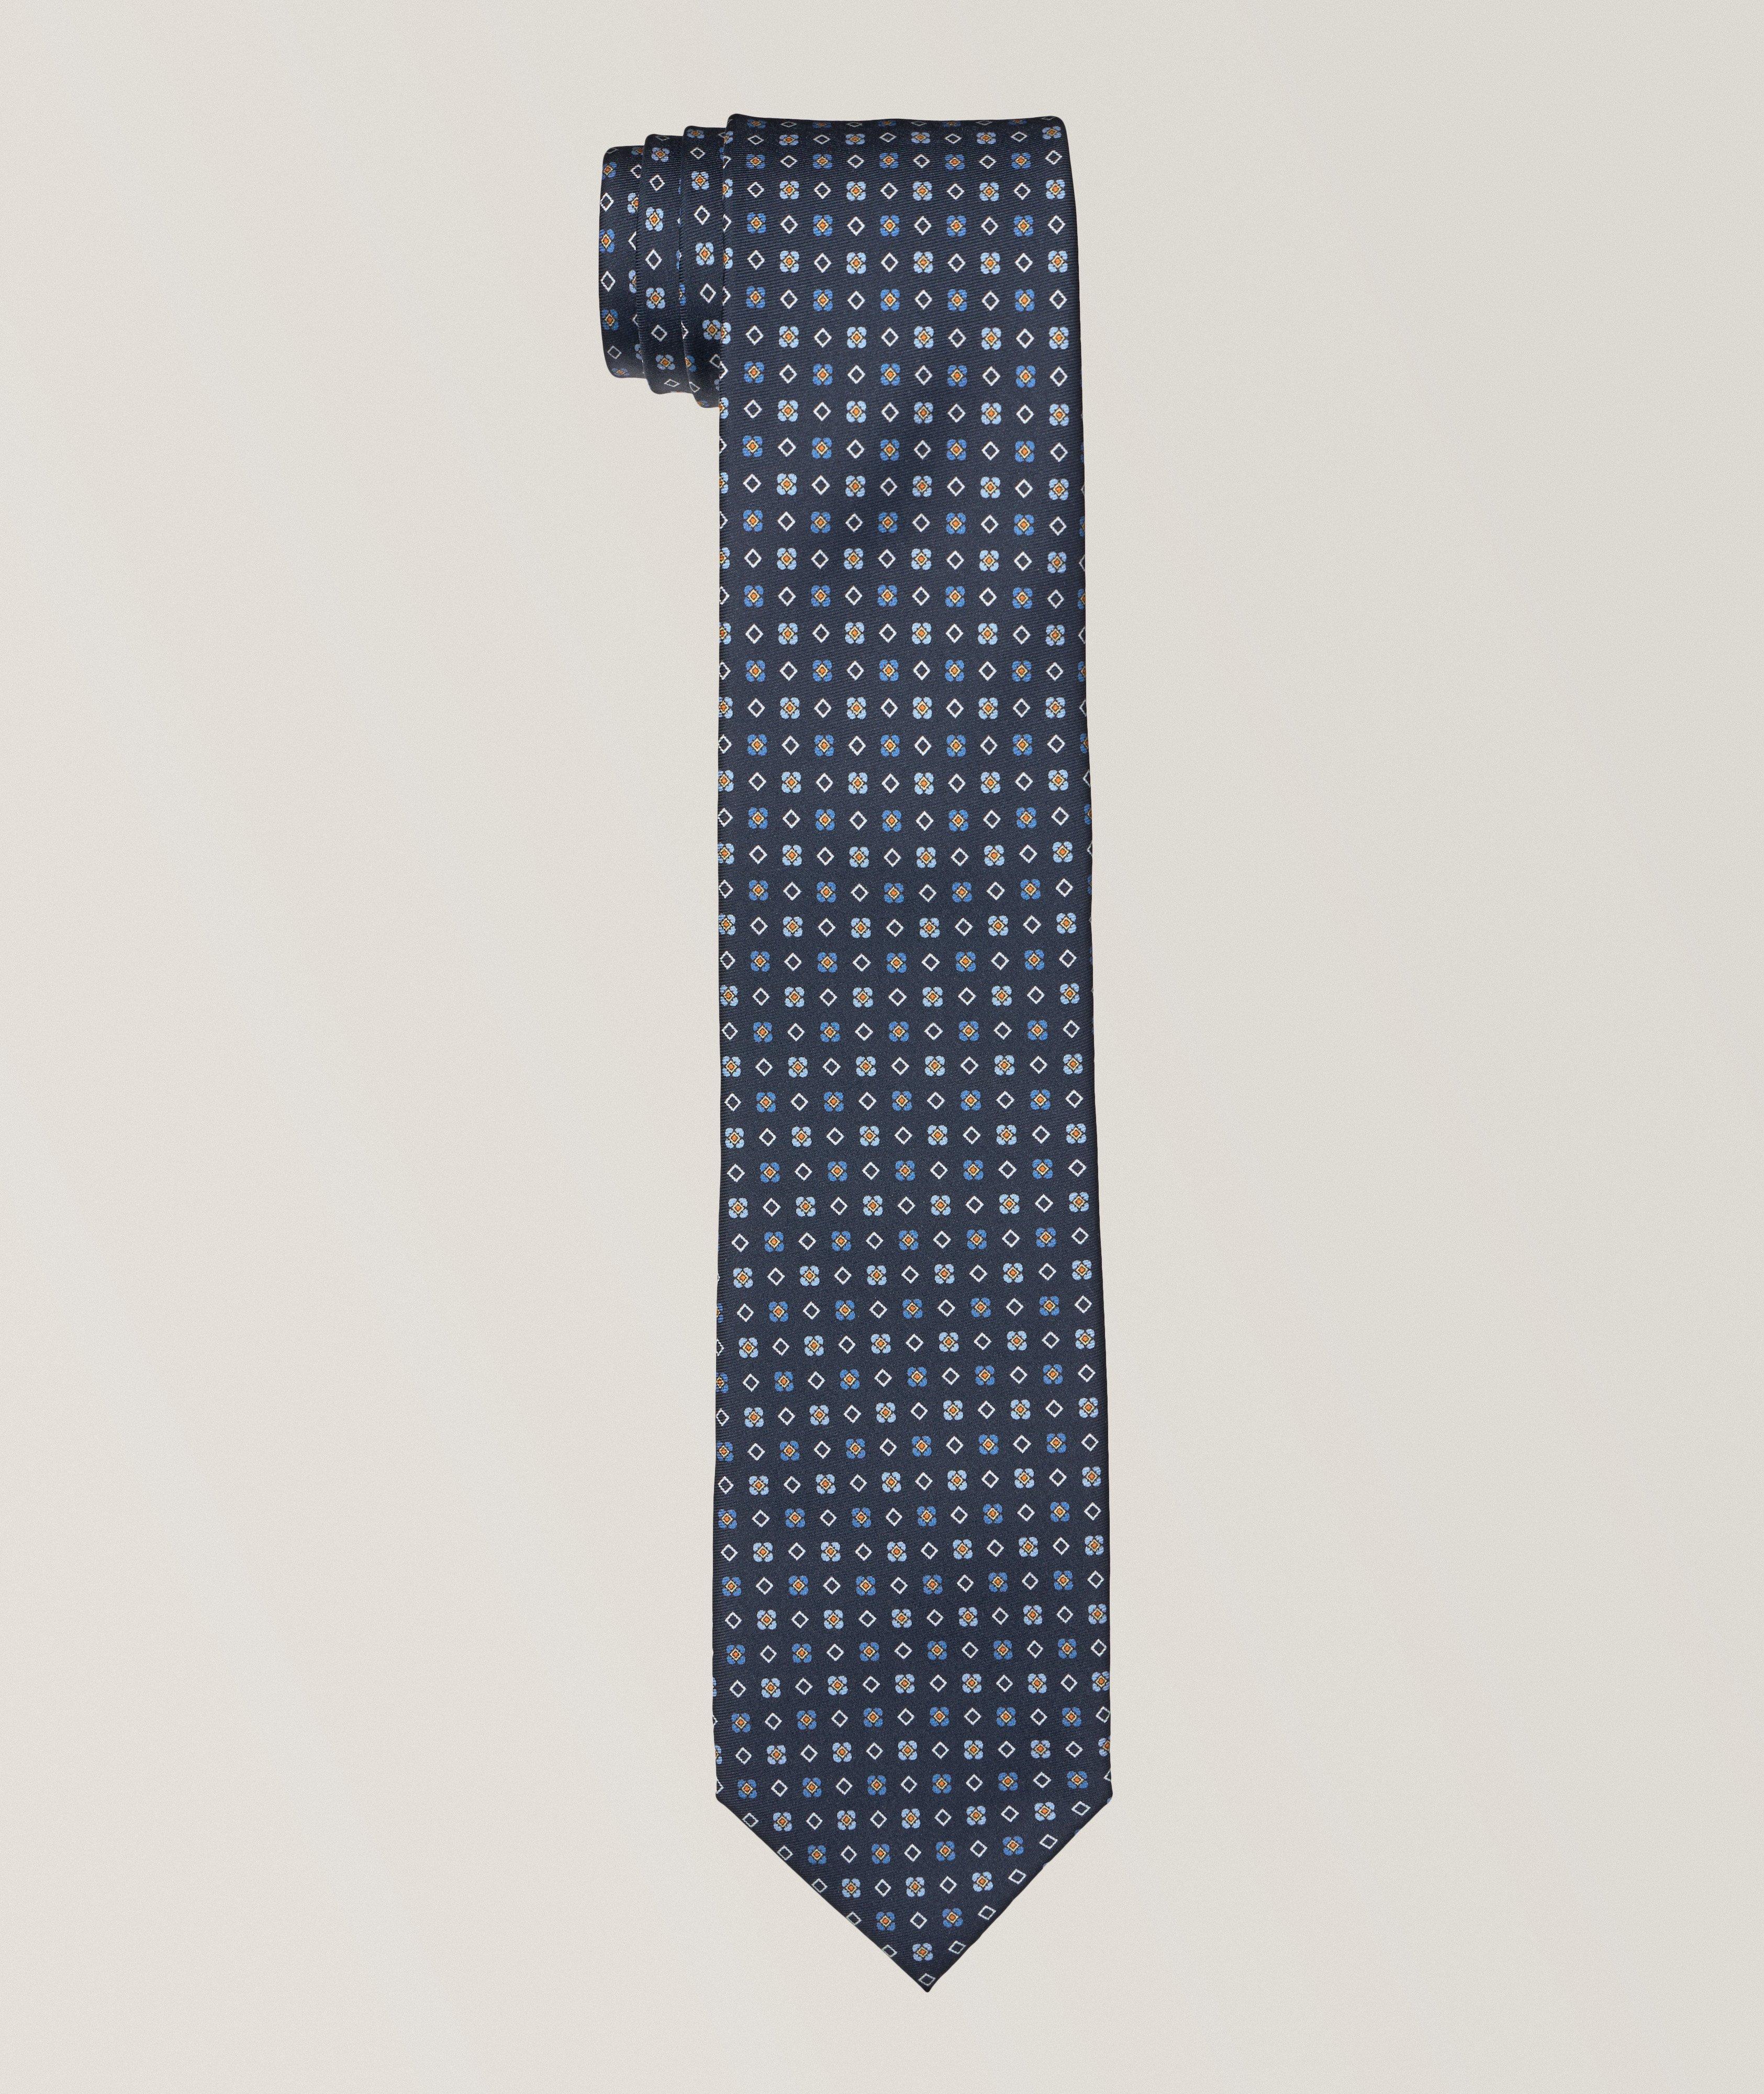 Cravate en soie à petit motif floral image 0